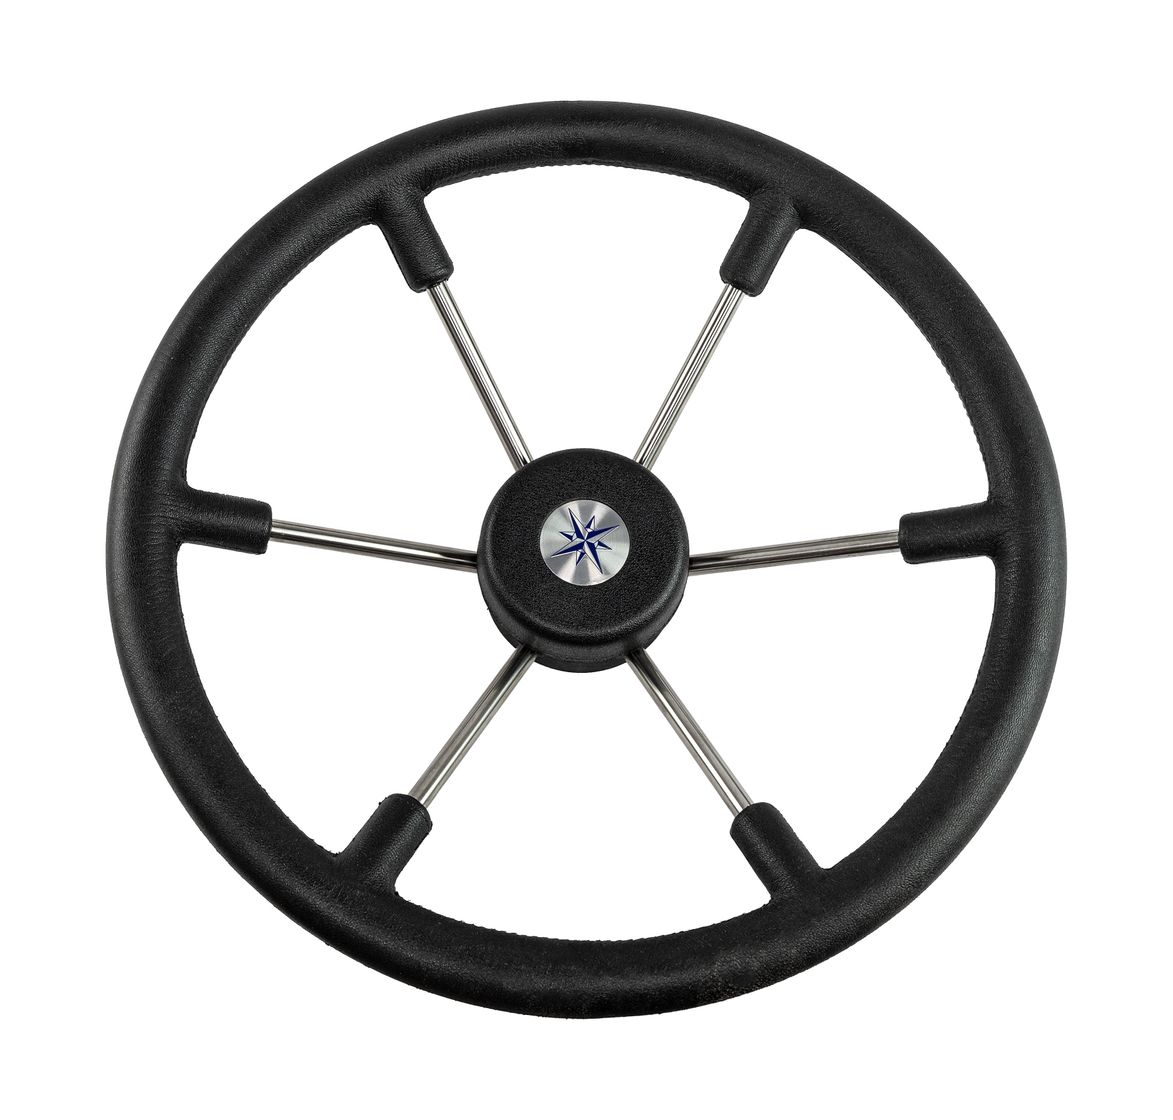 Рулевое колесо LEADER TANEGUM черный обод серебряные спицы д. 400 мм Volanti Luisi VN7400-01